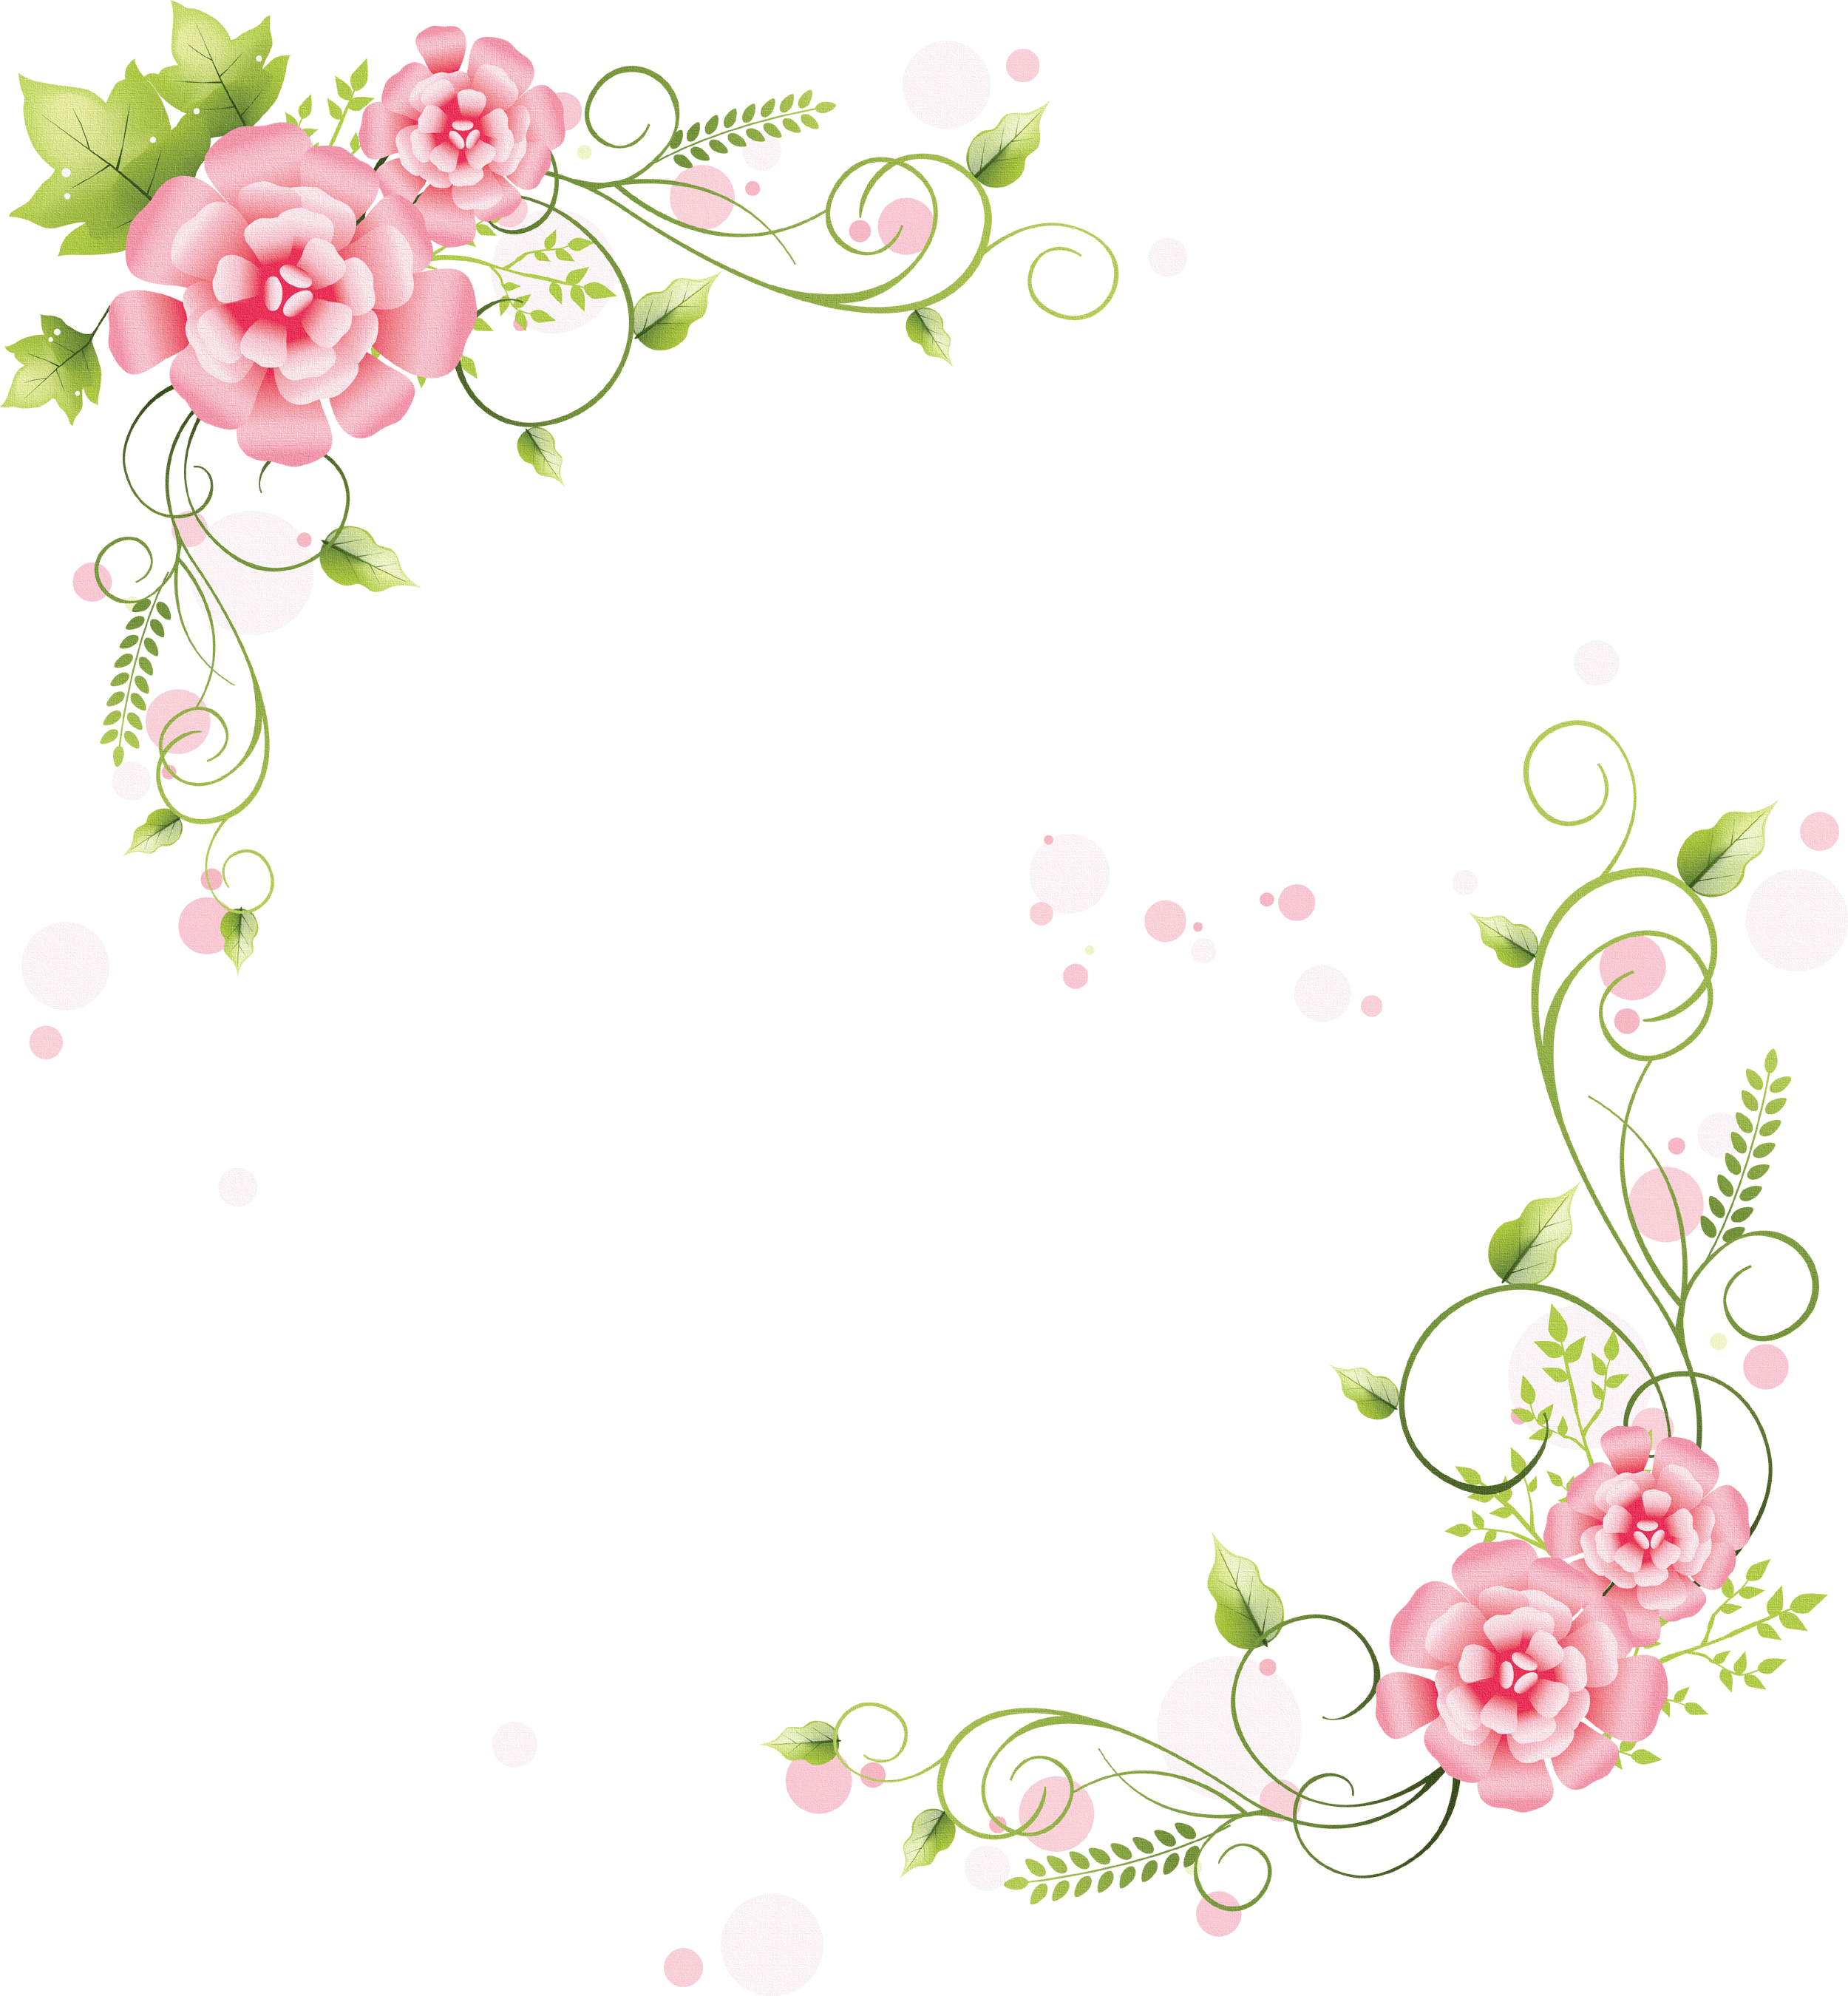 壁紙 背景イラスト 花のフレーム 外枠 No 186 ピンク 茎葉 曲線